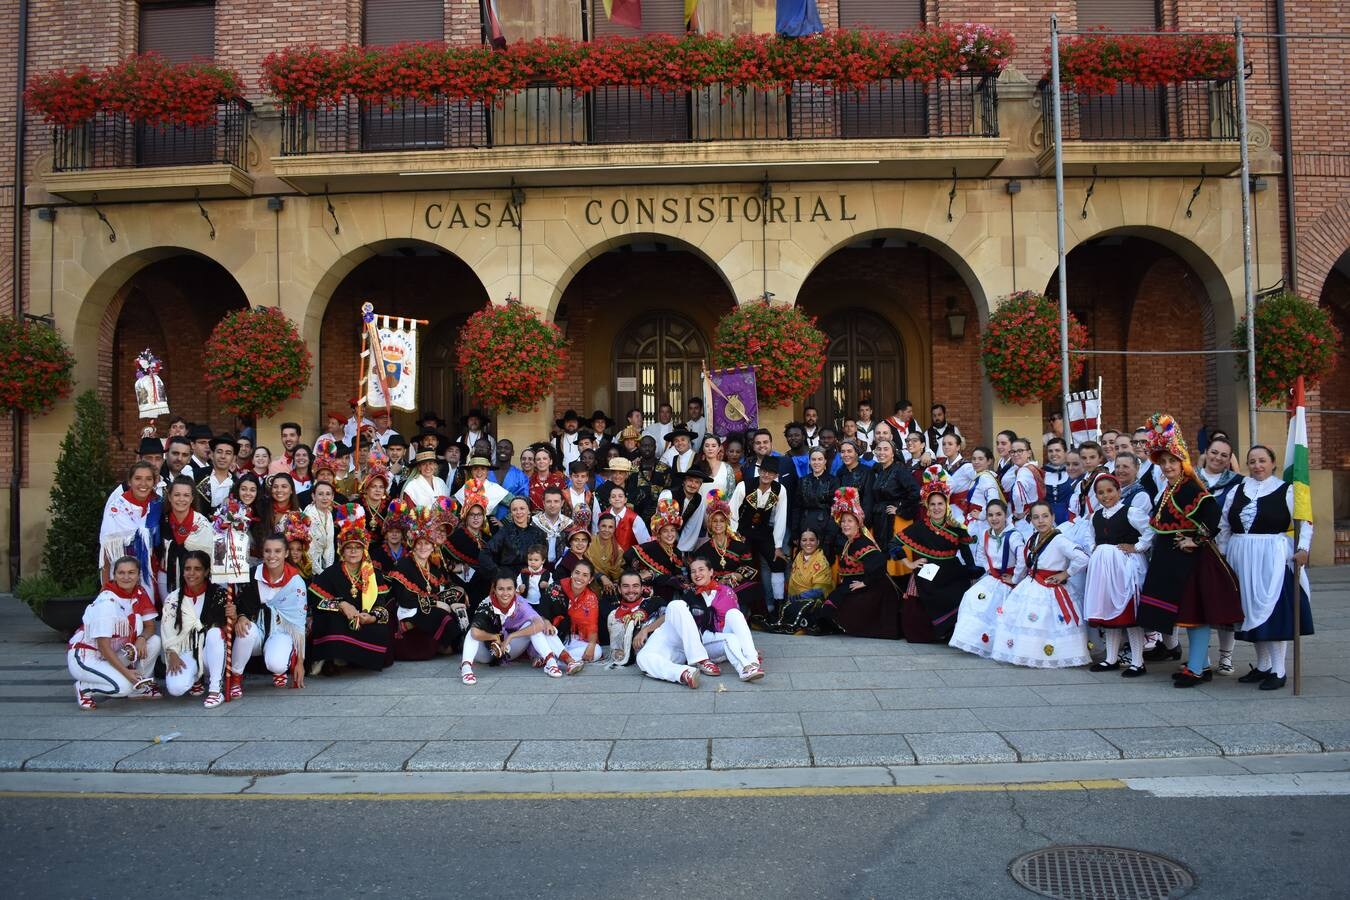 XXXI festival Internacional de danzas ciudad de Calahorra